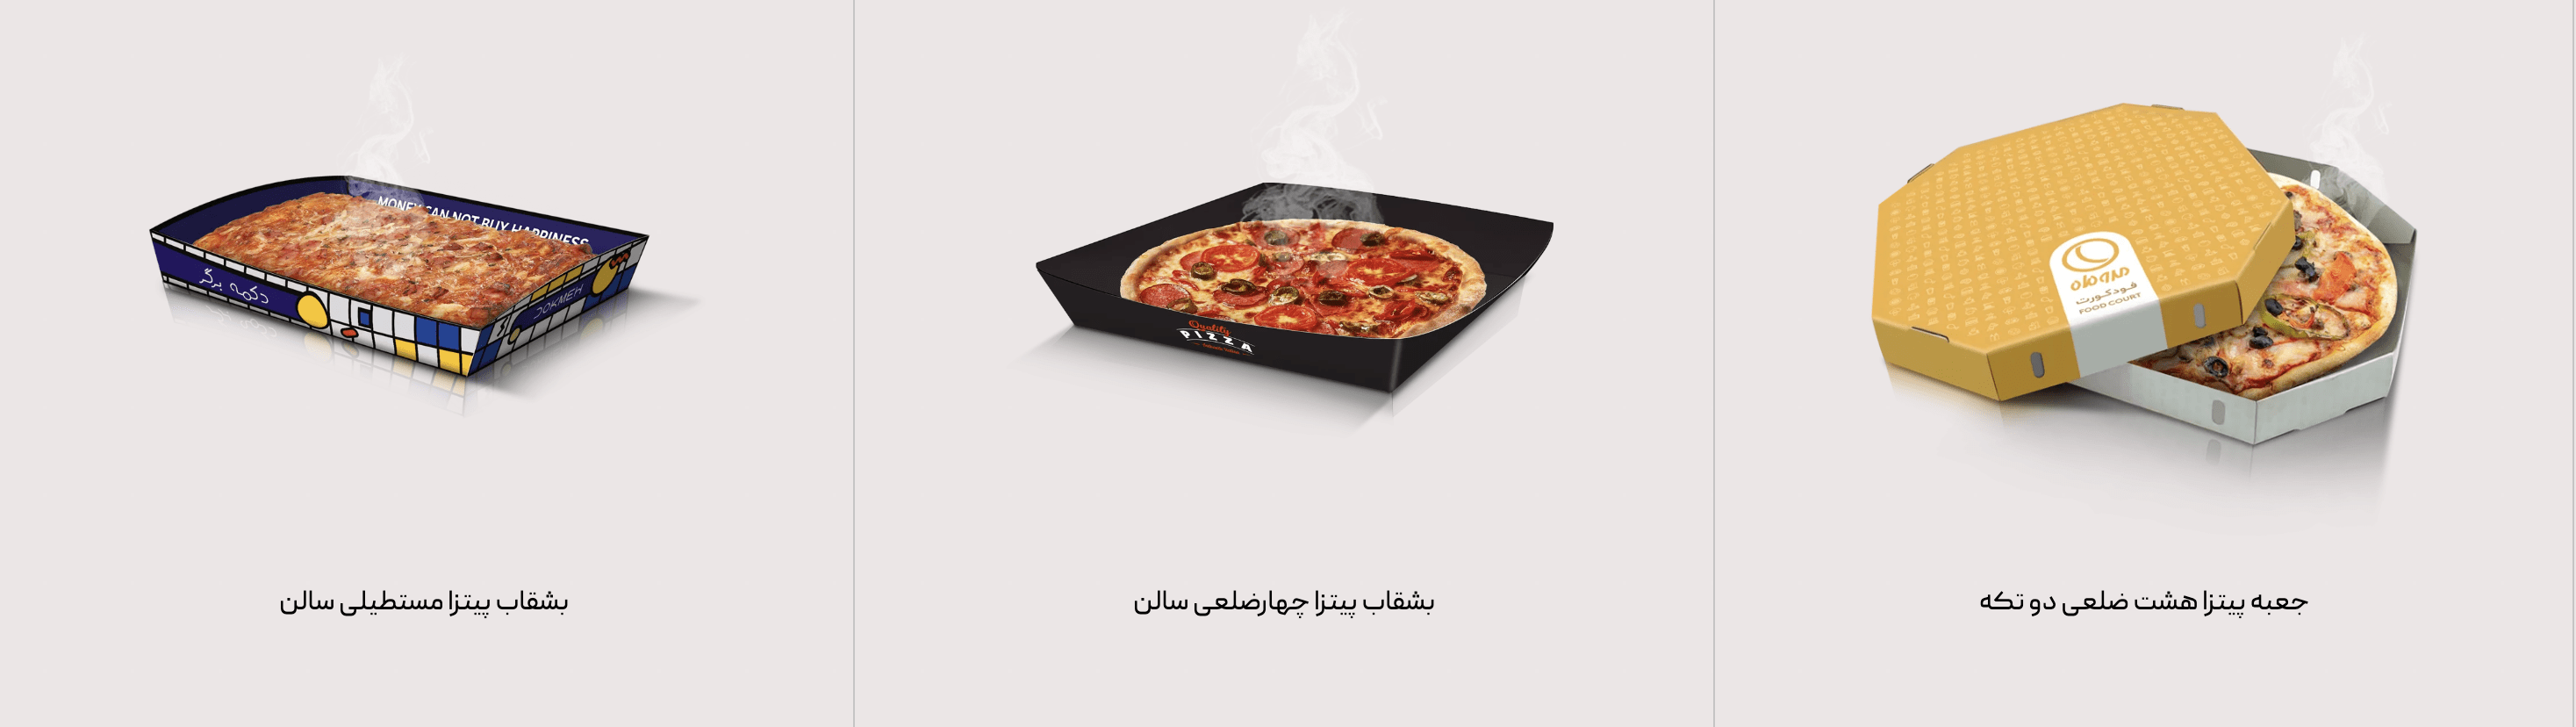 مدل جعبه پیتزا